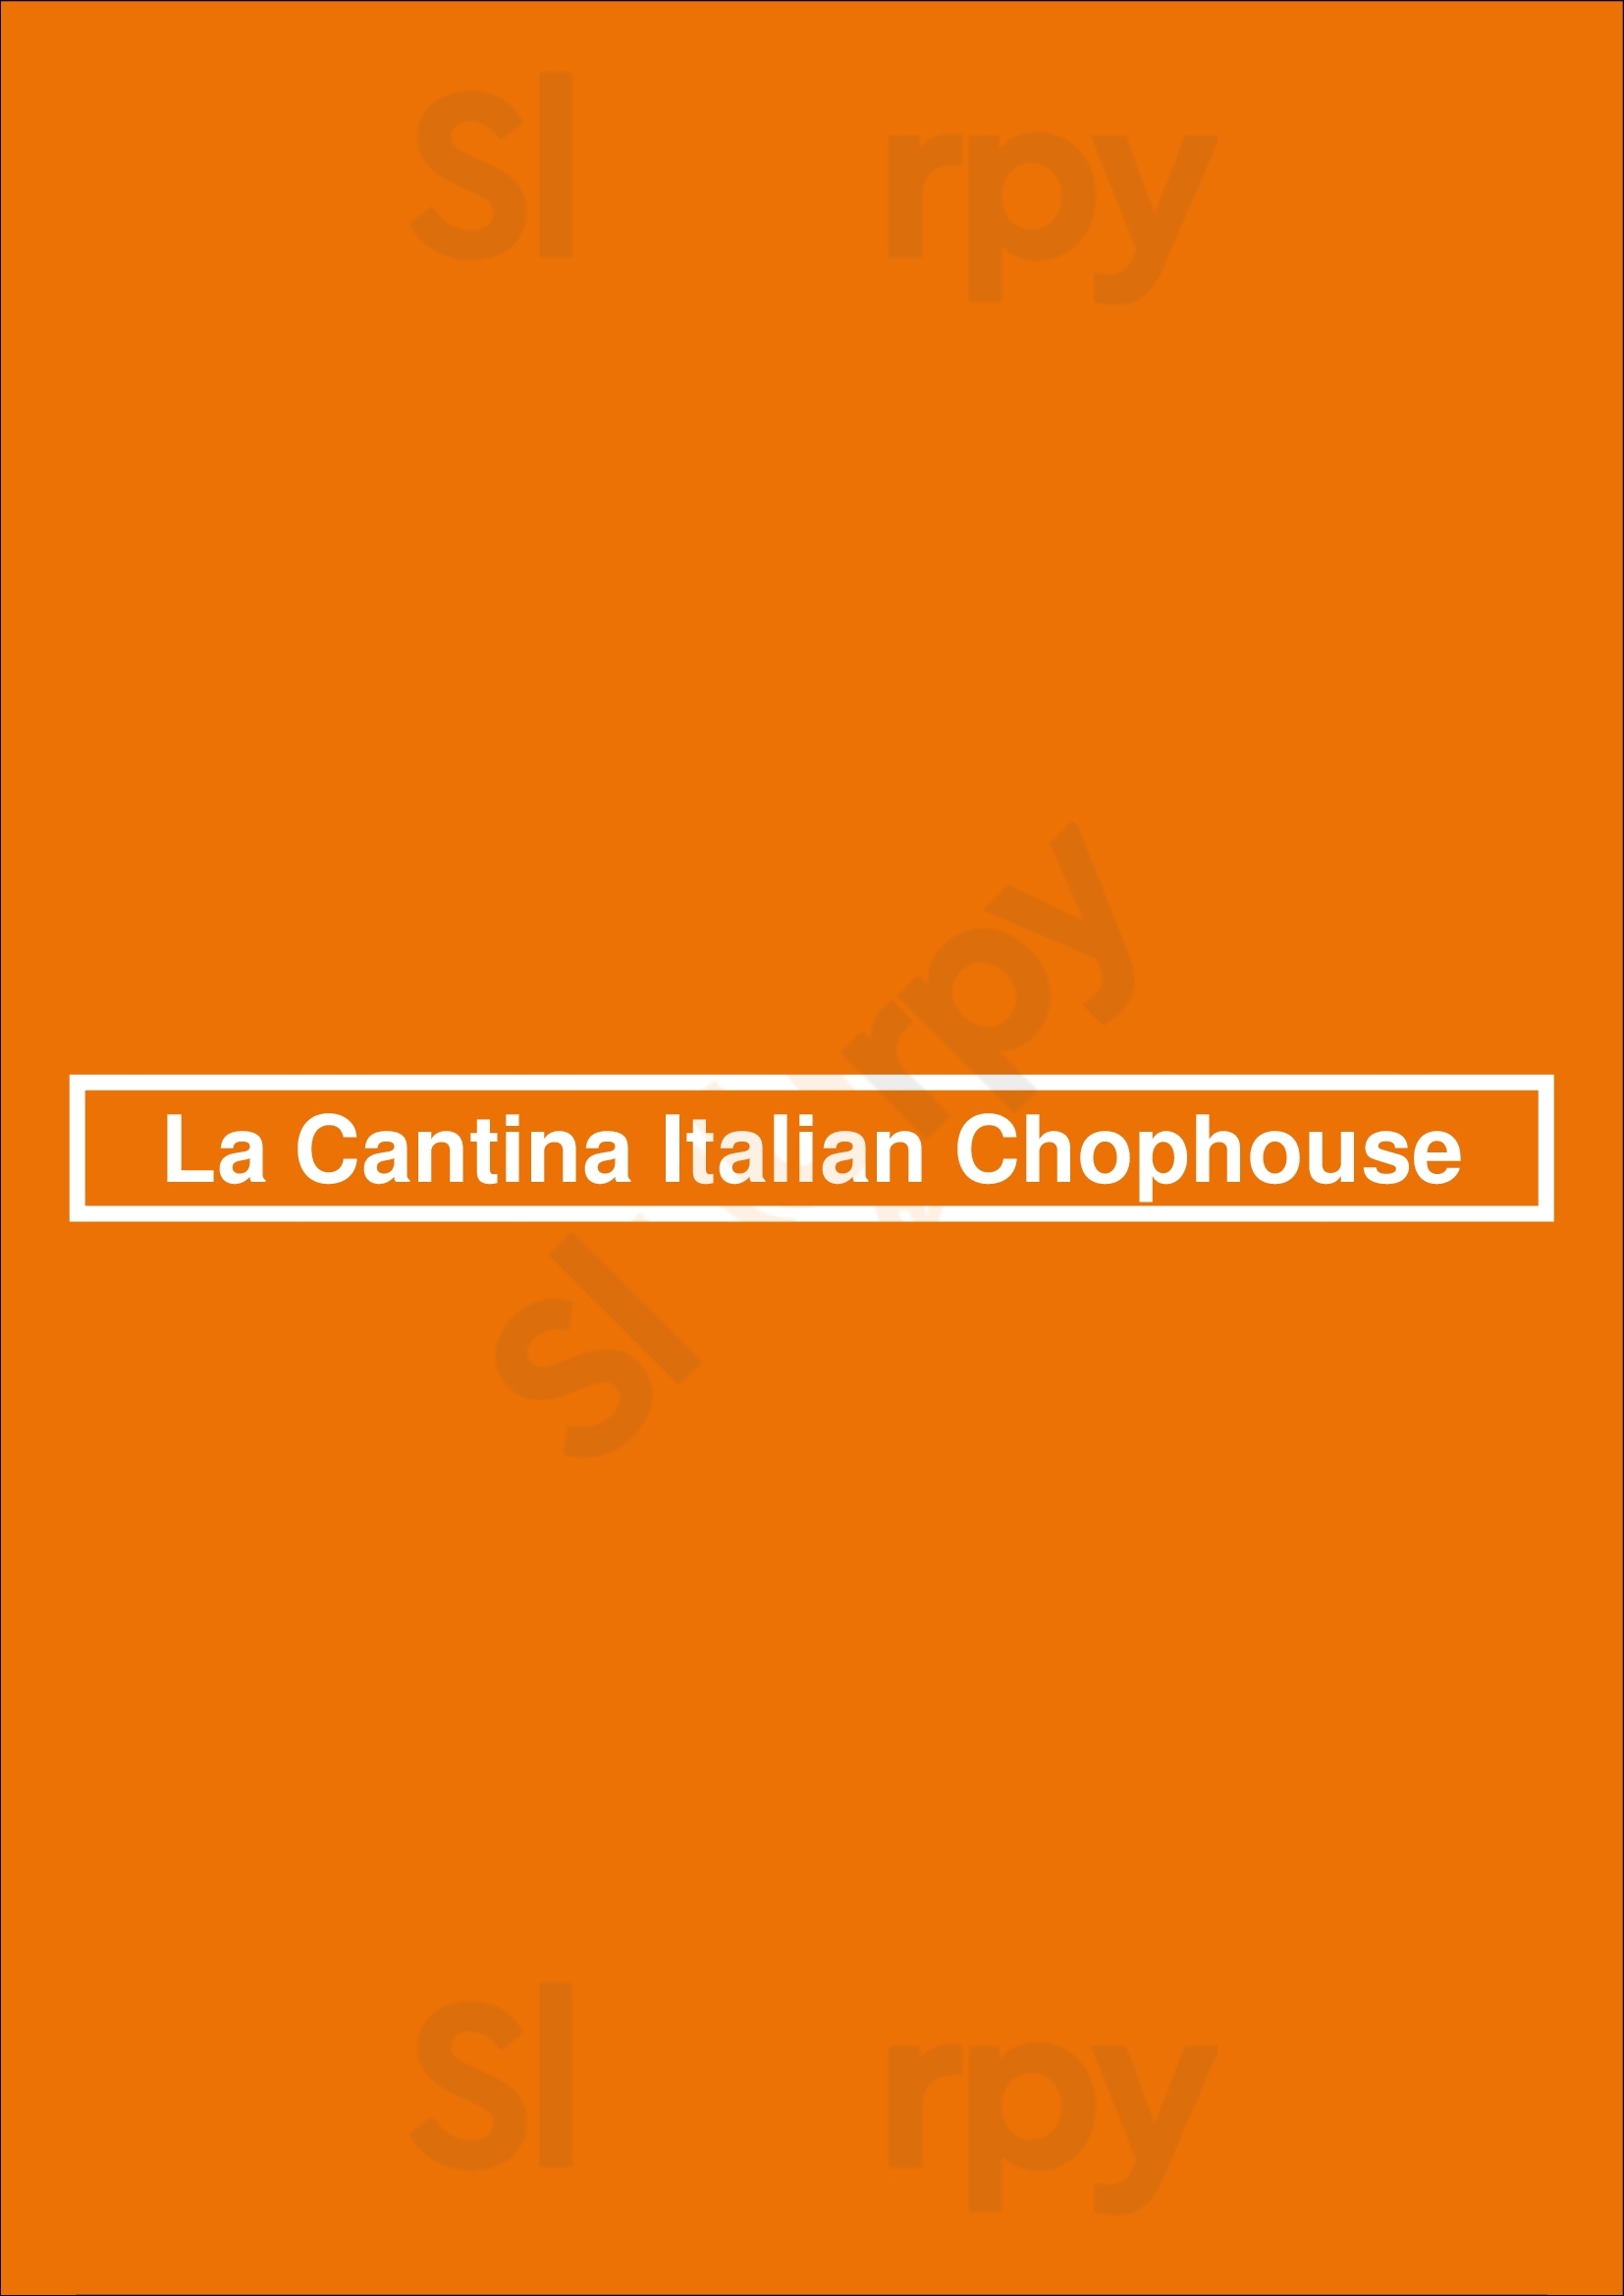 La Cantina Italian Chophouse Chicago Menu - 1